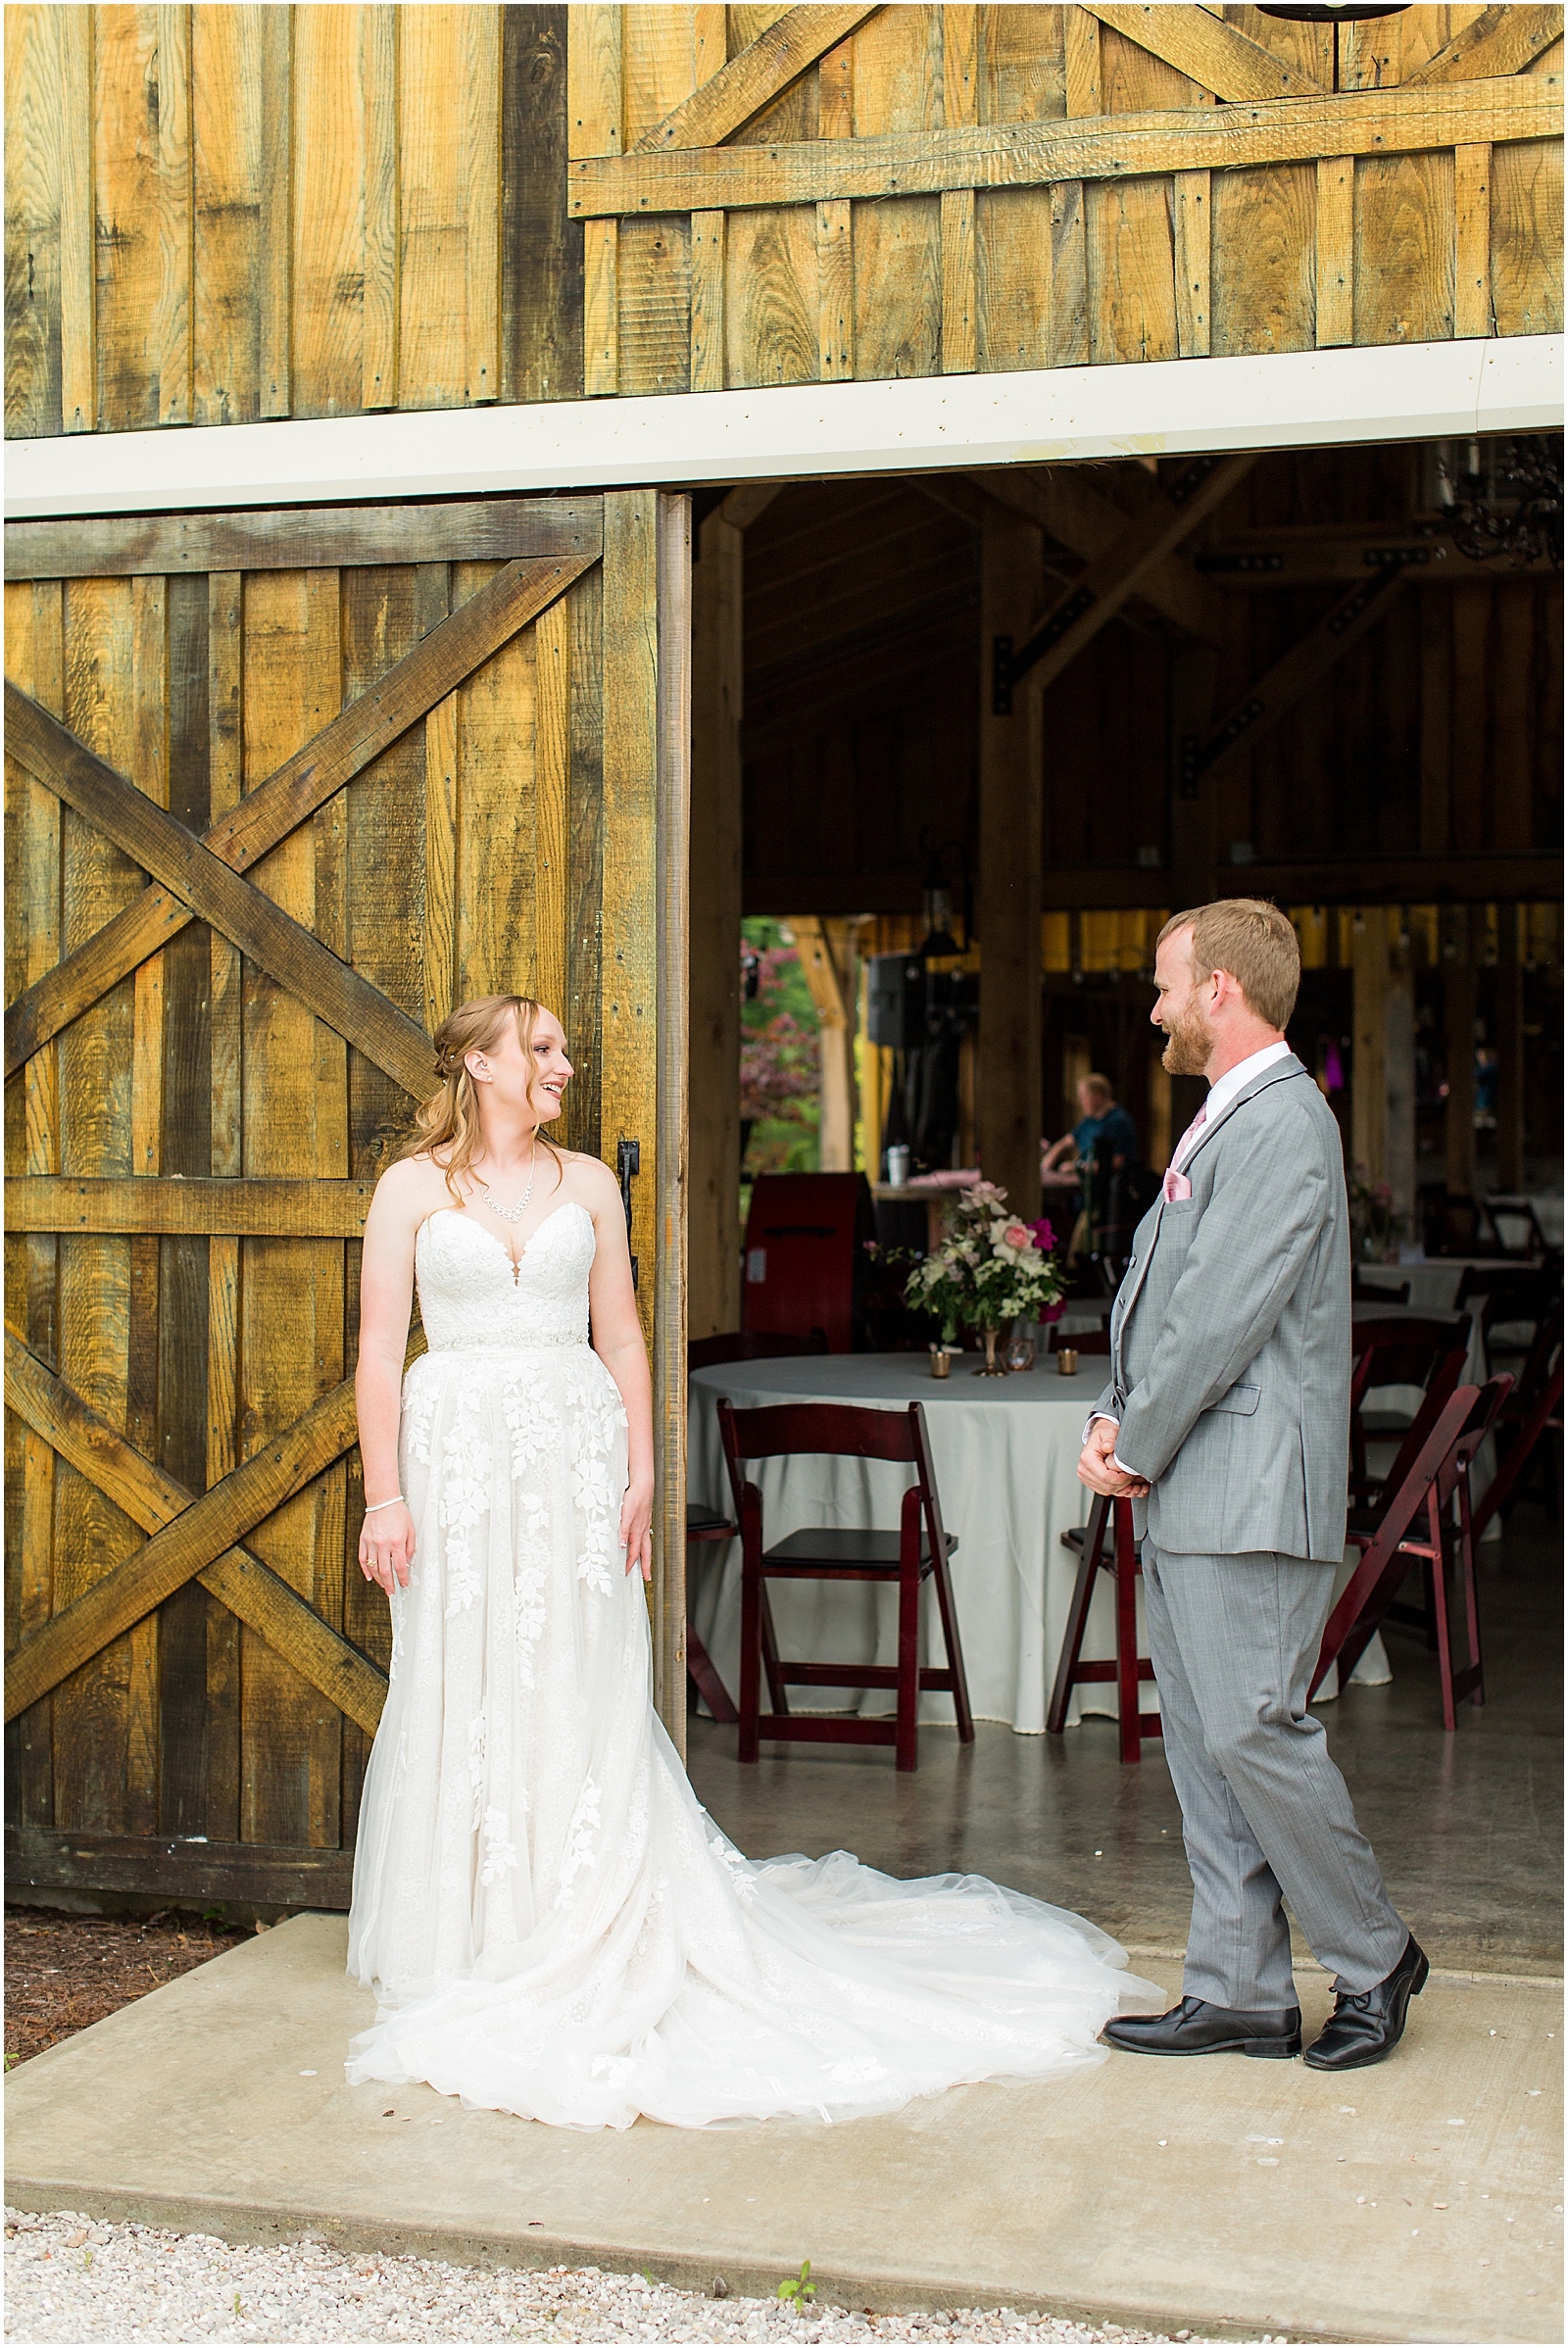 Sierra and Eddie | Wedding BlogBret and Brandie Blog | @bretandbrandie-0051.jpg